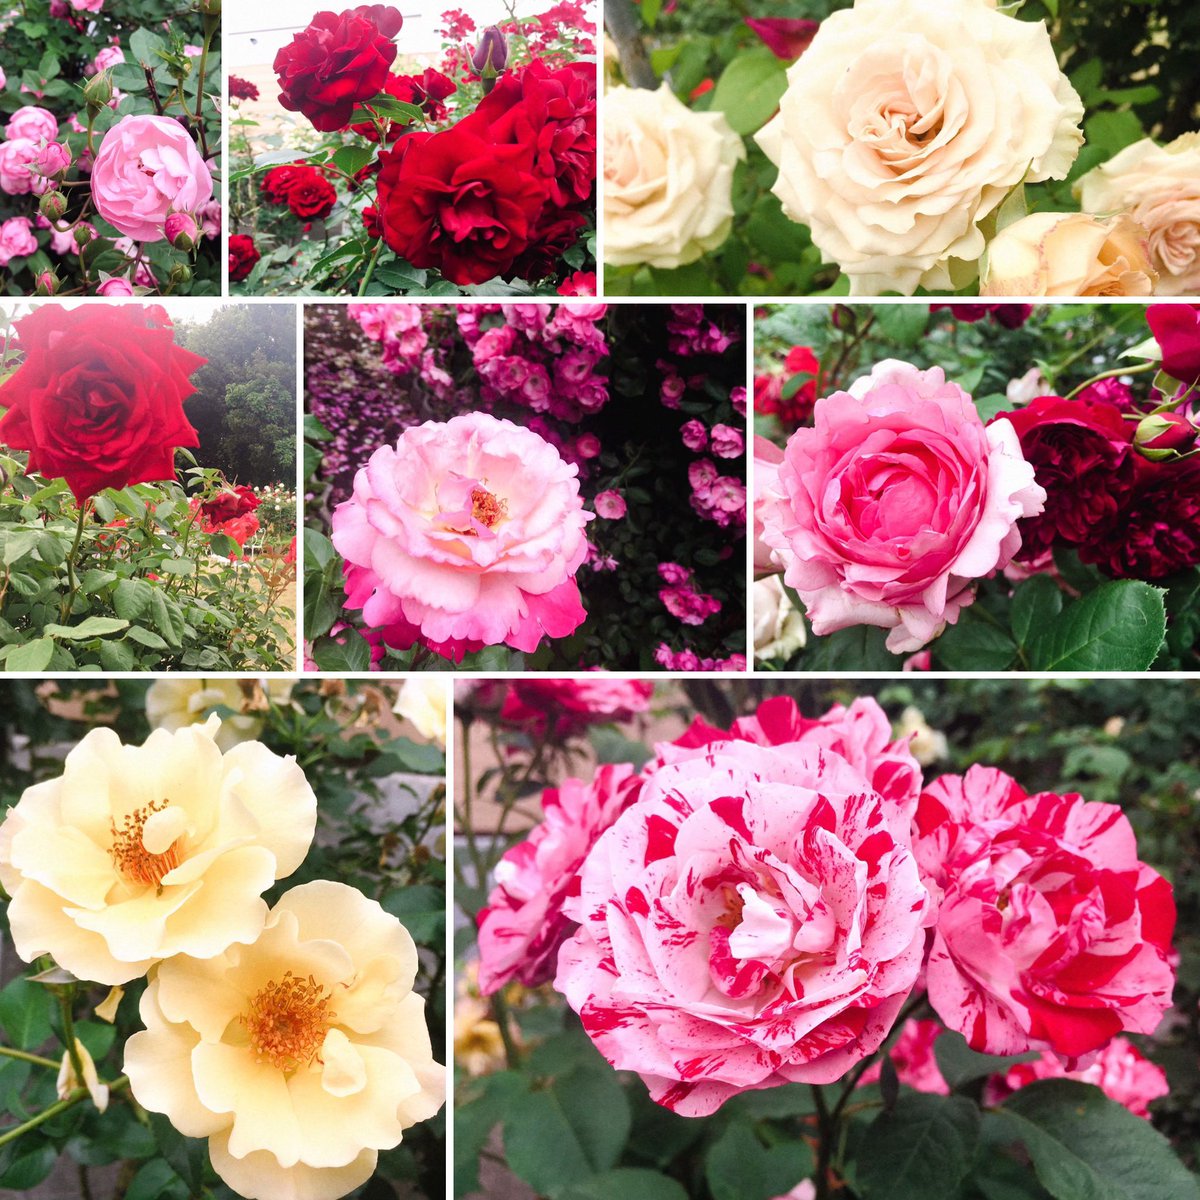 杏 わーーーー 綺麗 ありがとうございます うちの庭のバラは赤と ピンクもすこしあるかな すごーい 私も薔薇園いこうかな